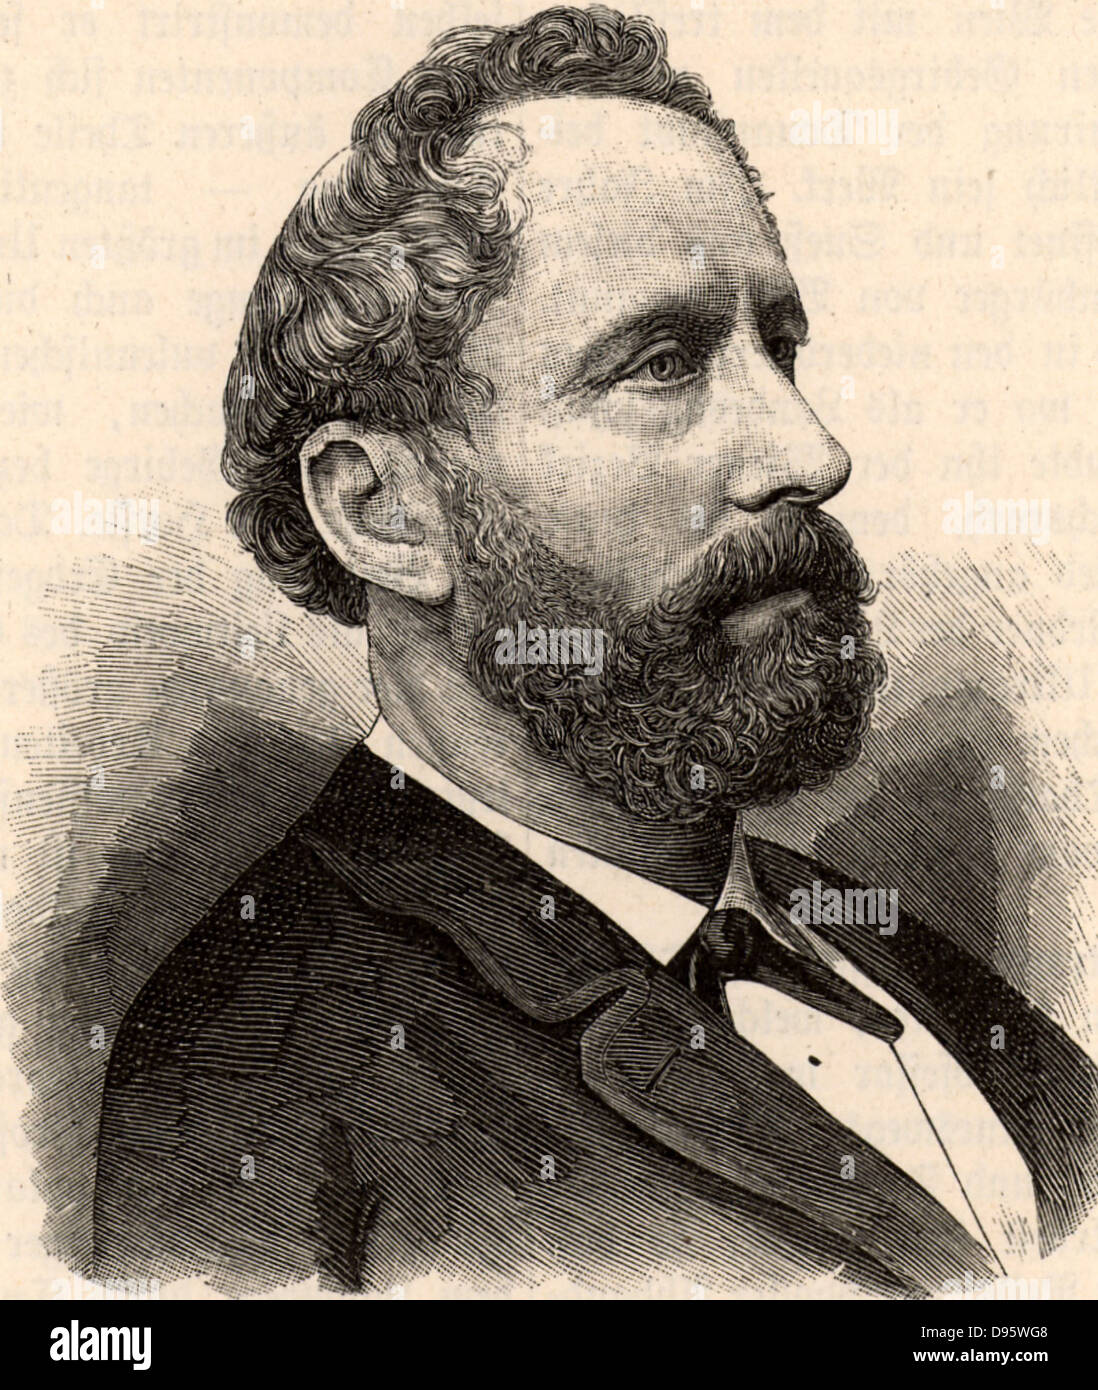 Eduard Suess (1831-1914), géologue autrichien né à Londres. Il a proposé l'existence d'un supercontinent qu'il nomme Gondwana (1861) et de la Téthys. Son travail a fondé la théorie de la dérive continentale. Gravure tirée de "Der Stein der Weisen" (Leipzig c1895). Banque D'Images